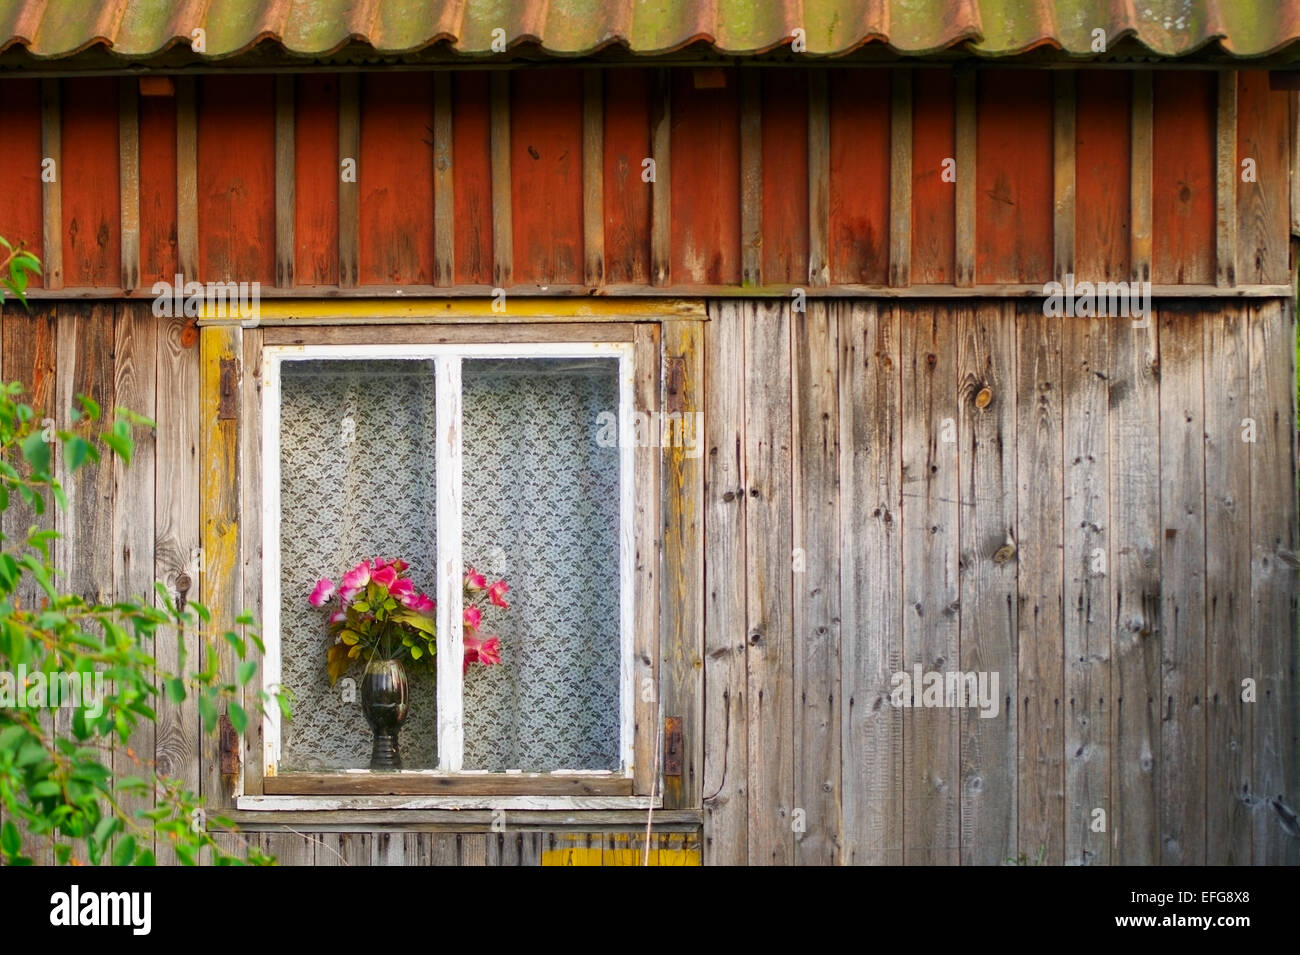 Fenster einer alten hölzernen Häuschen mit roten Rosen in einer Vase.  Pommern, Polen Stockfotografie - Alamy